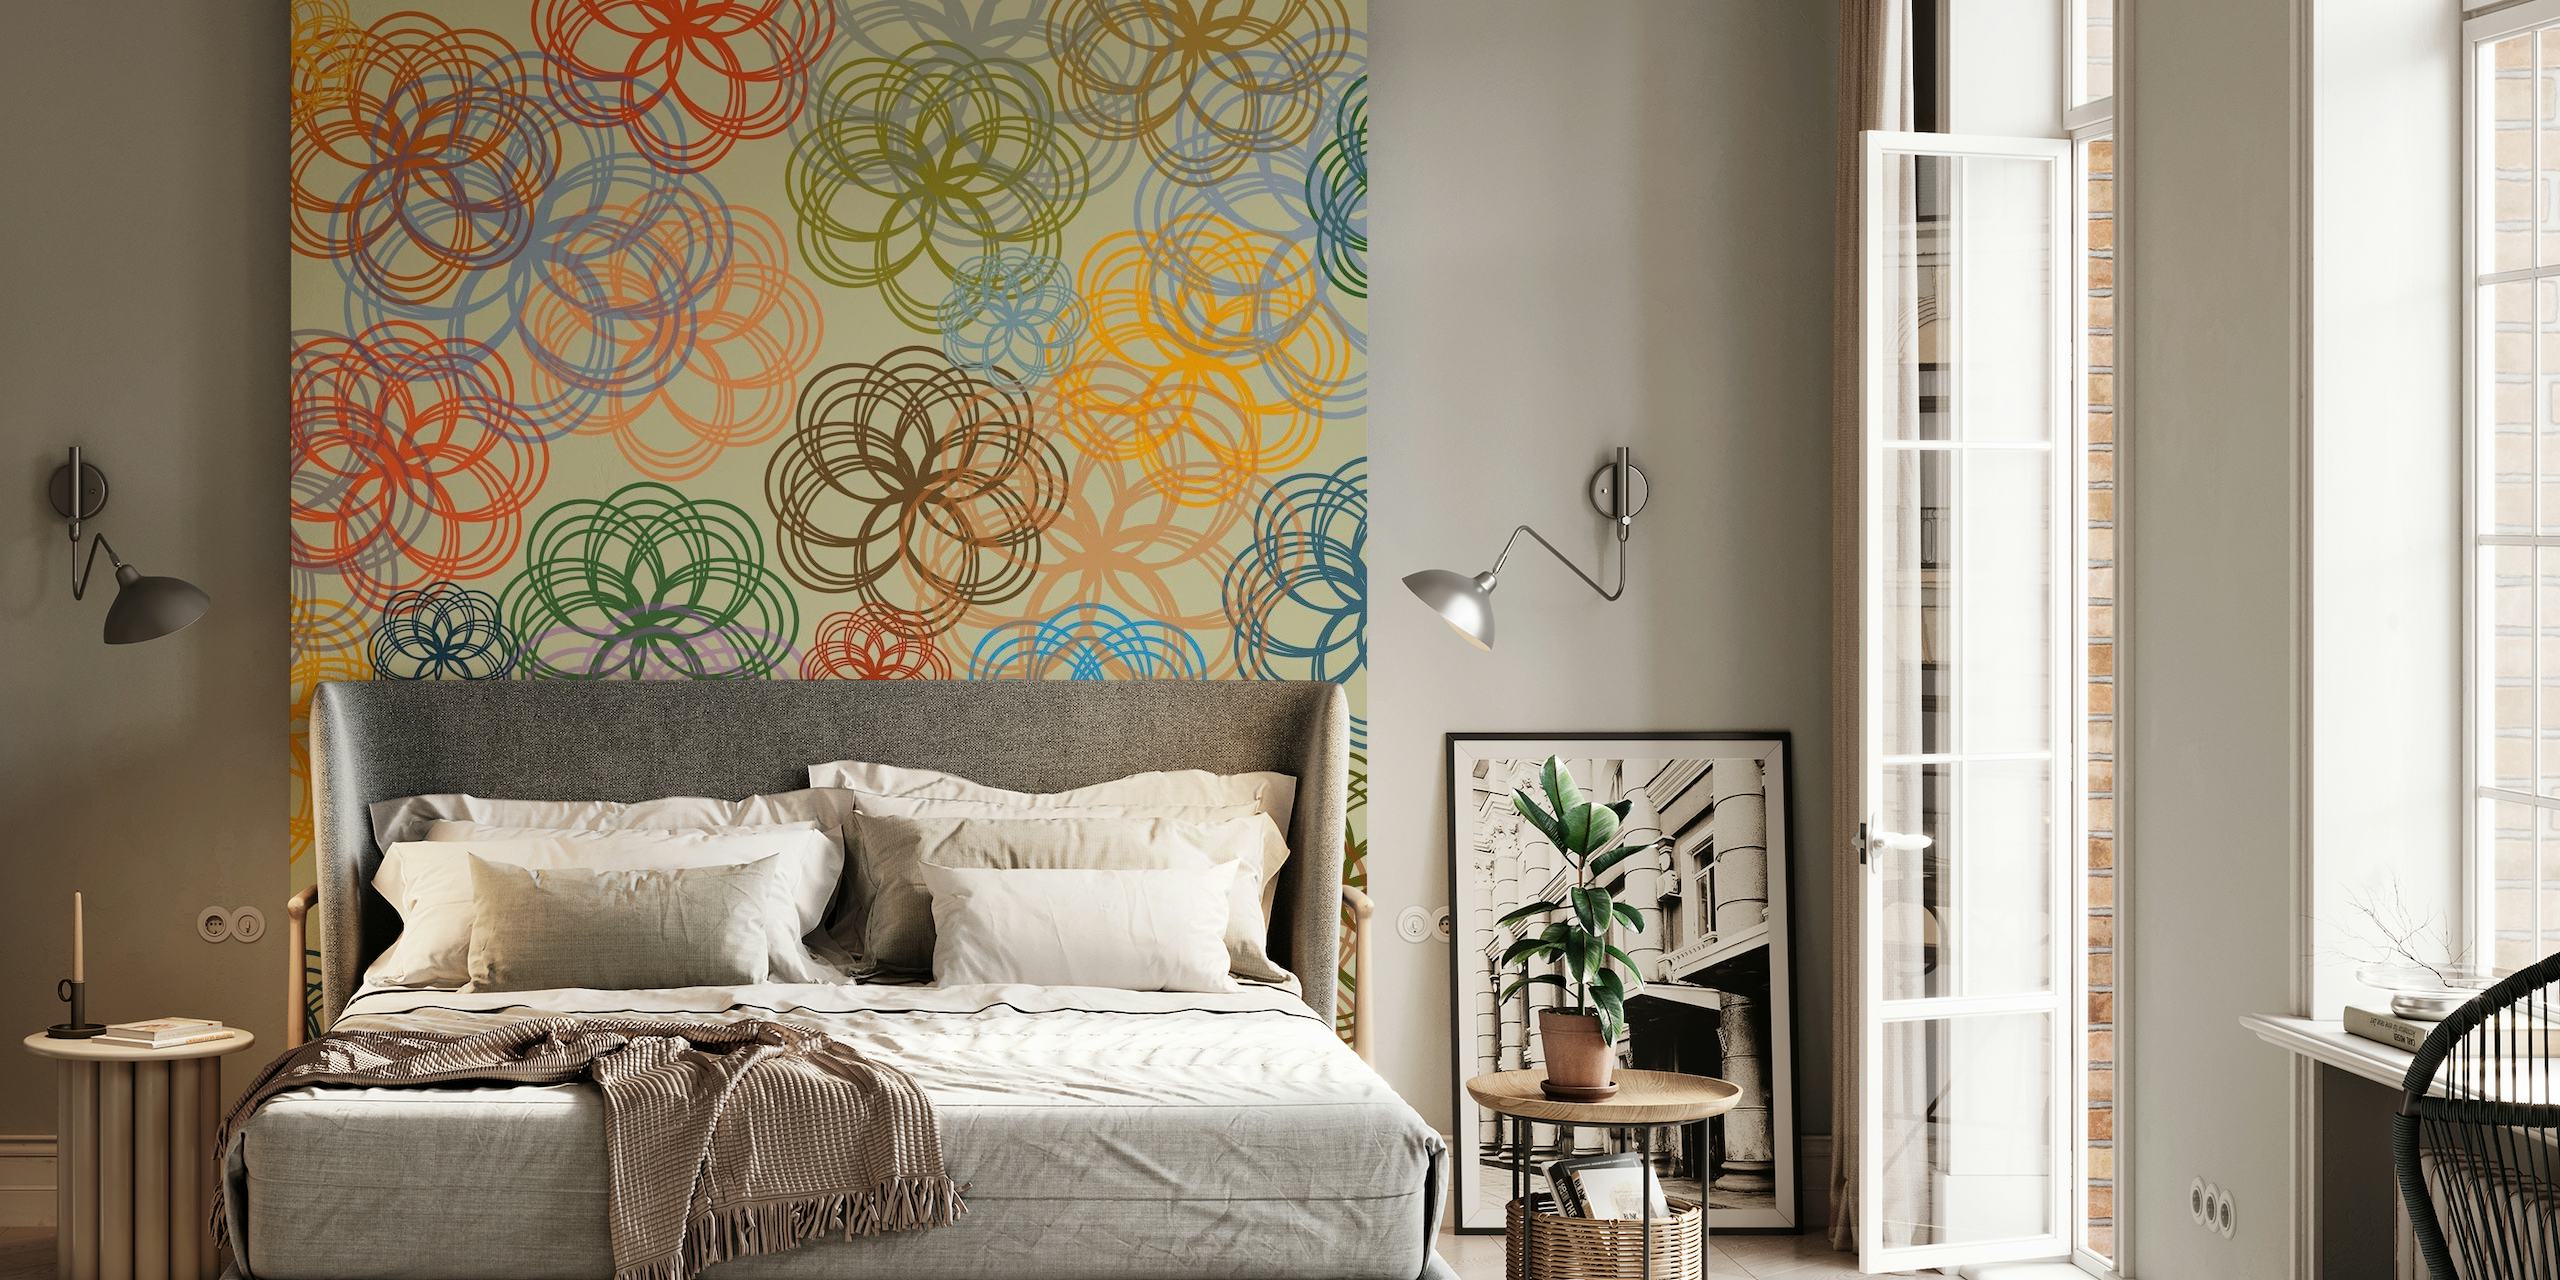 Muurschildering met abstracte geometrische bloemenpatronen in een pastelkleurenschema